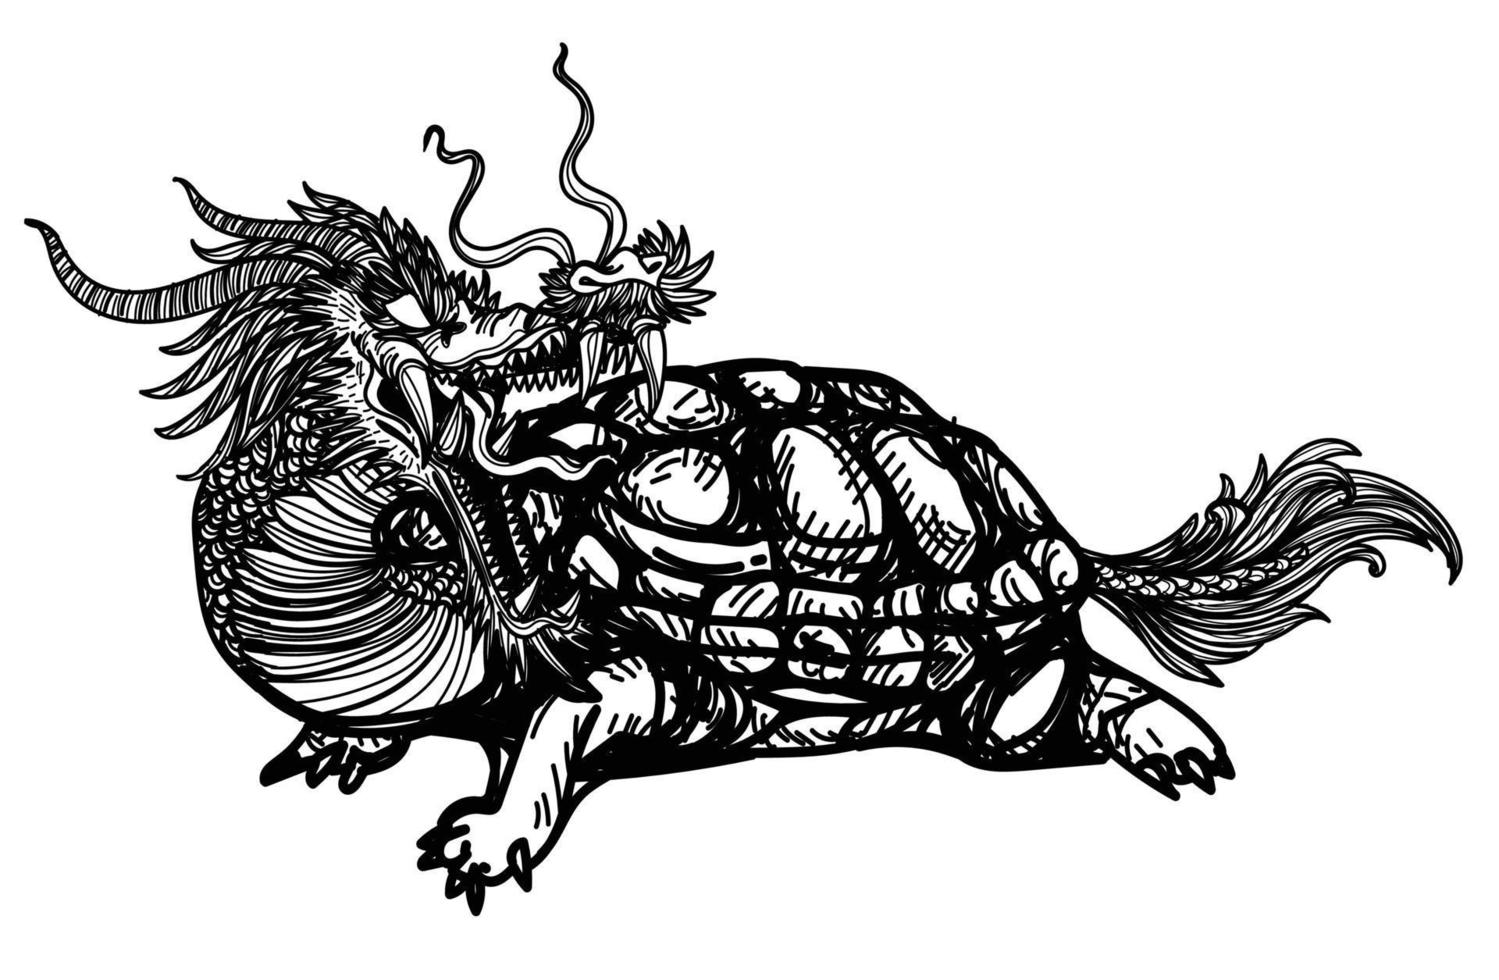 tatouage art corps de dragon tortue dessin à la main croquis noir et blanc vecteur